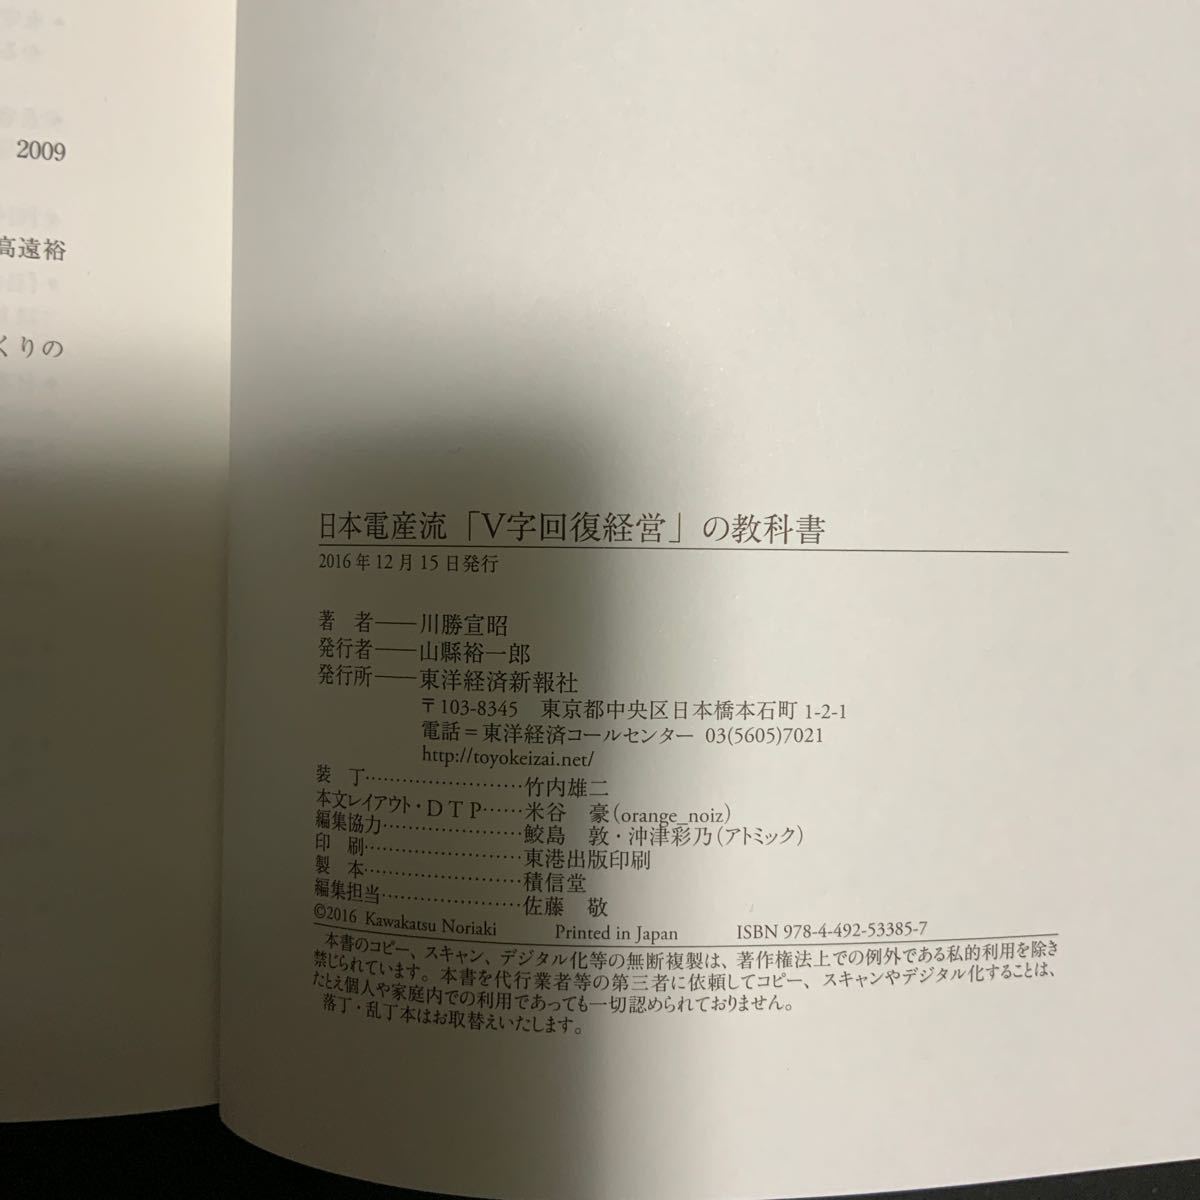 日本電産流 「V字回復経営」 の教科書/川勝宣昭